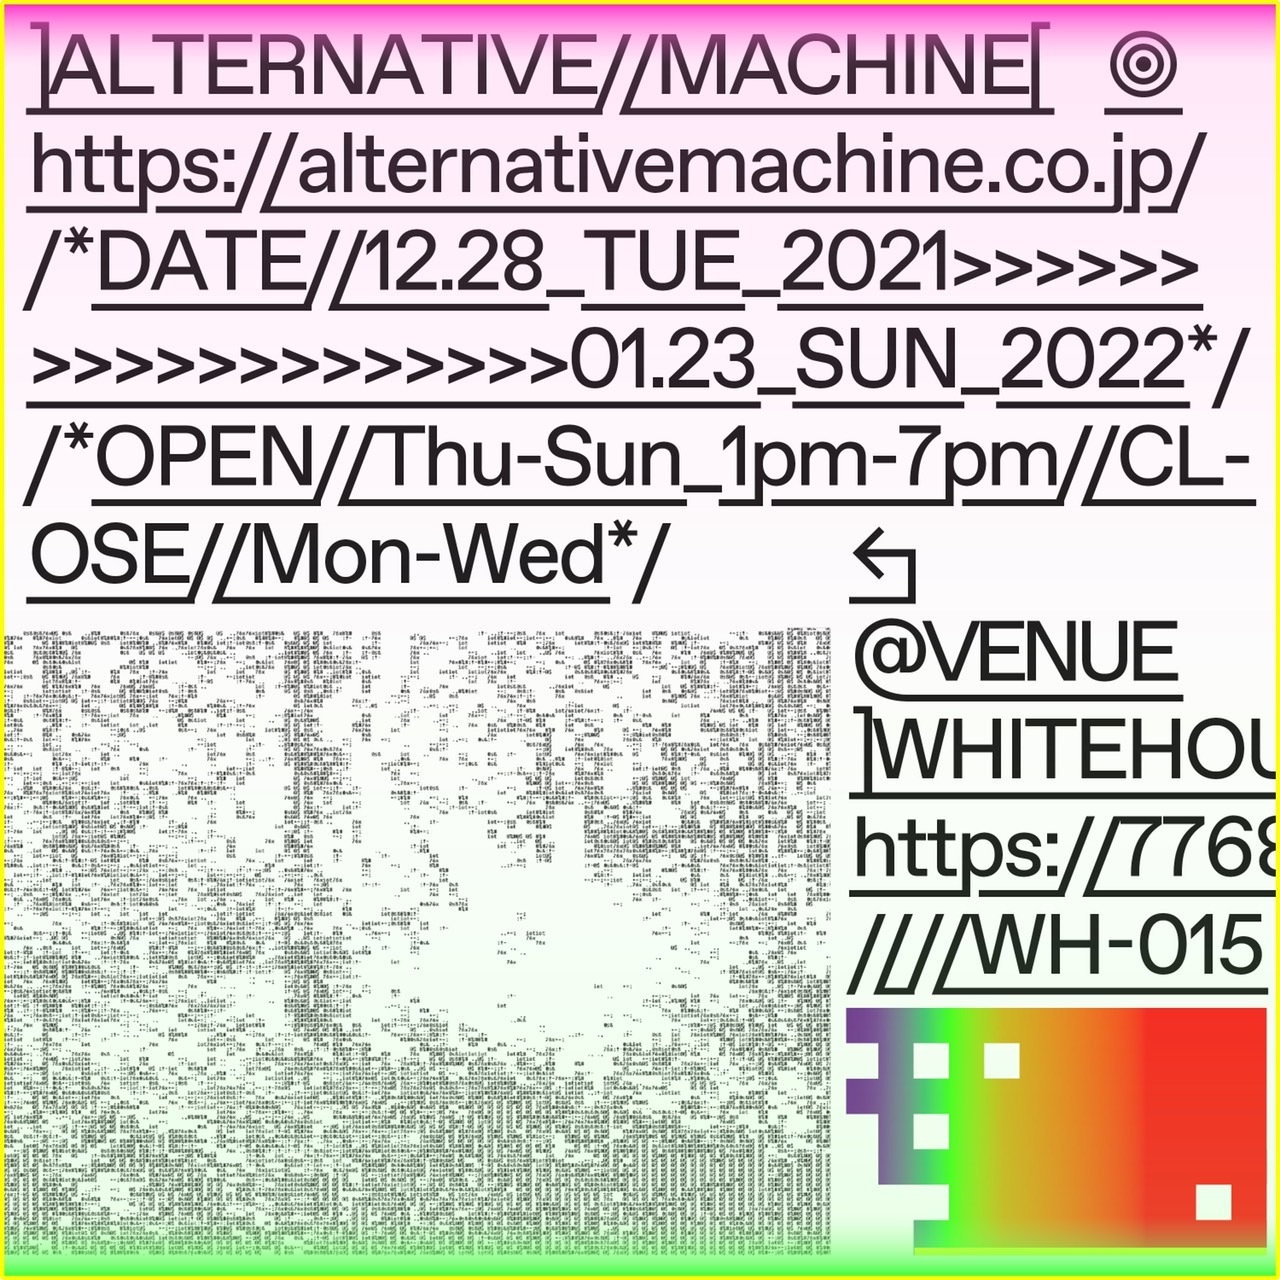 新宿WHITEHOUSEにてALTERNATIVE MACHINEの新作展示「ALTERNATIVE MACHINE」を開催